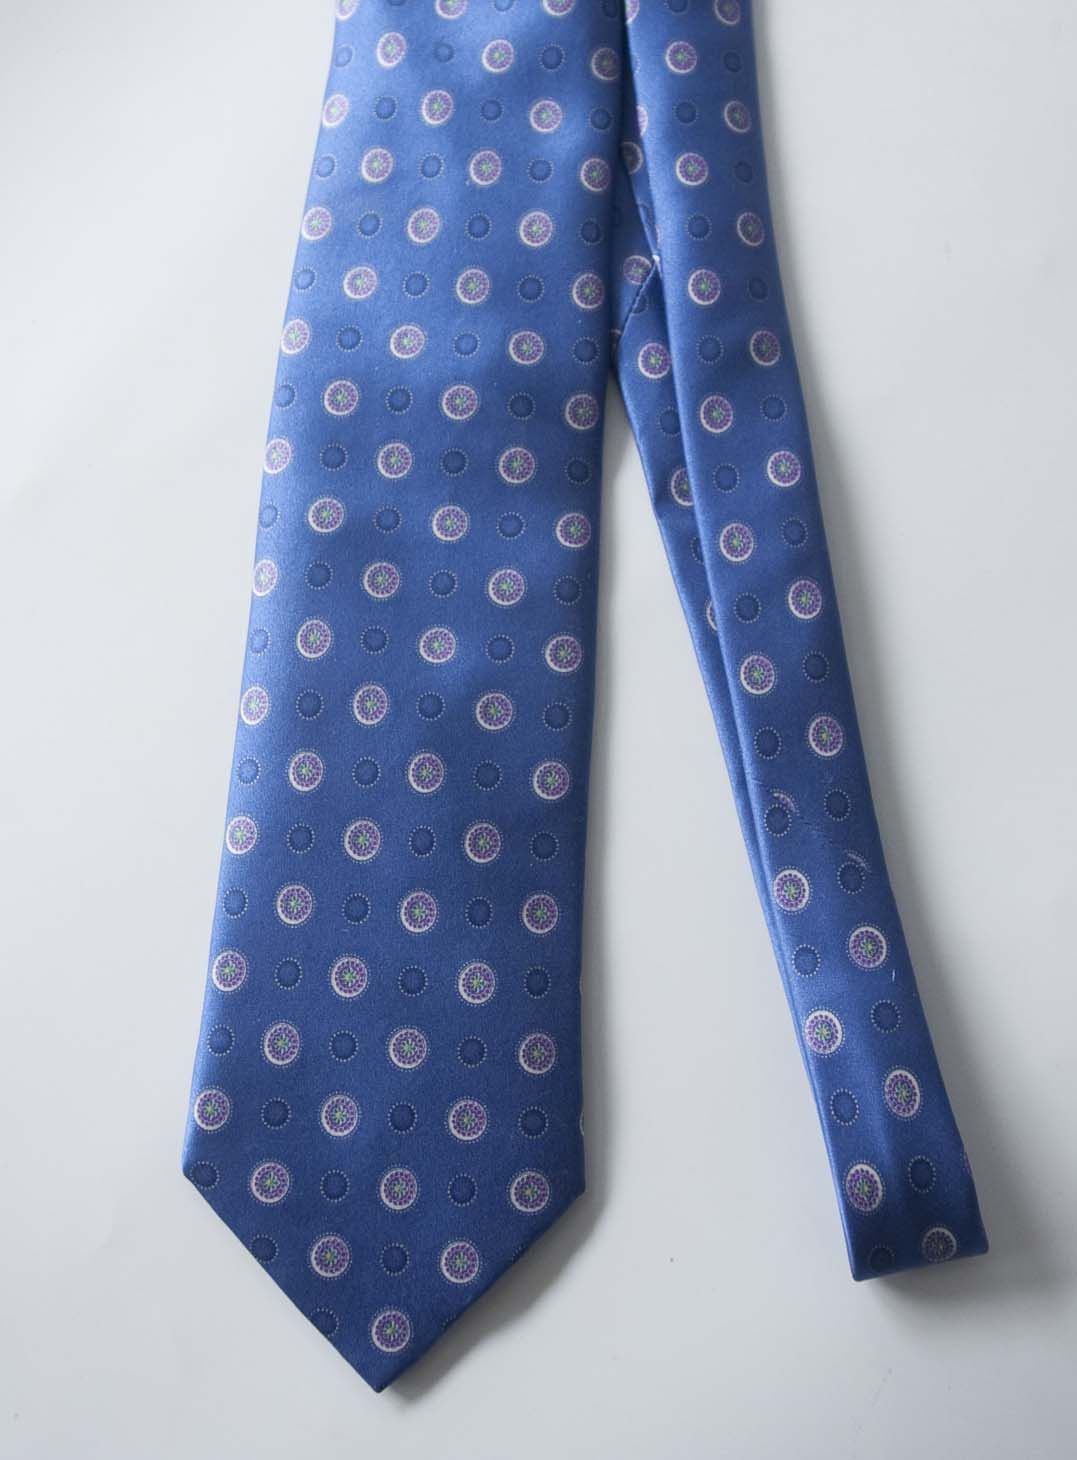 Brioni Brioni Tie Satin Blue 100% Silk Made in Italy | Grailed